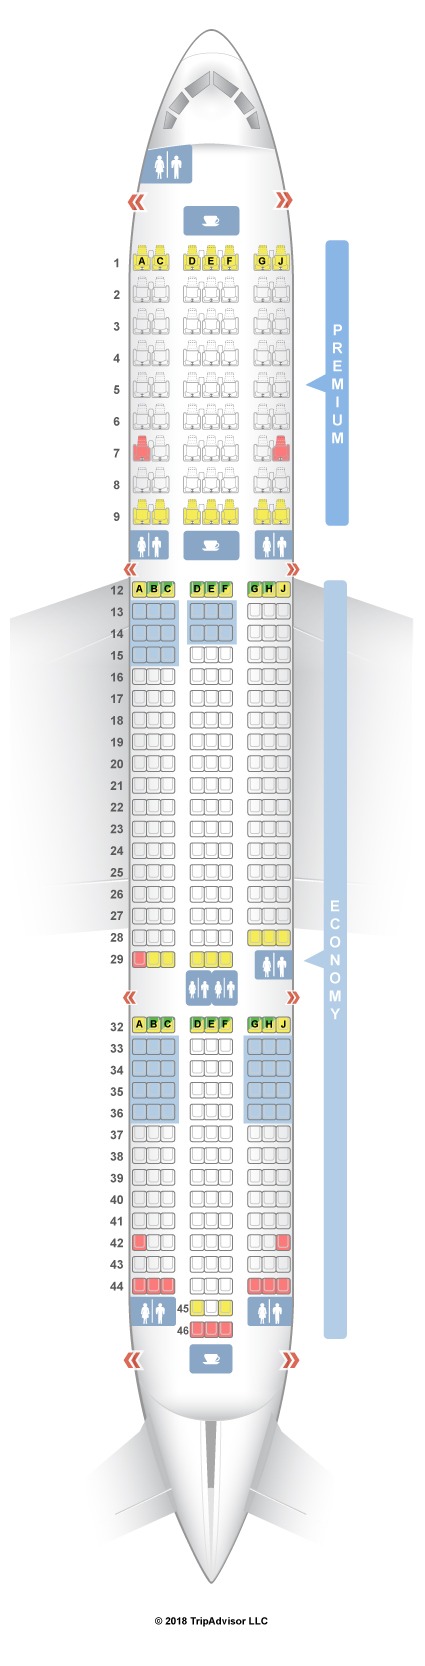 787 9 Dreamliner Seating Chart